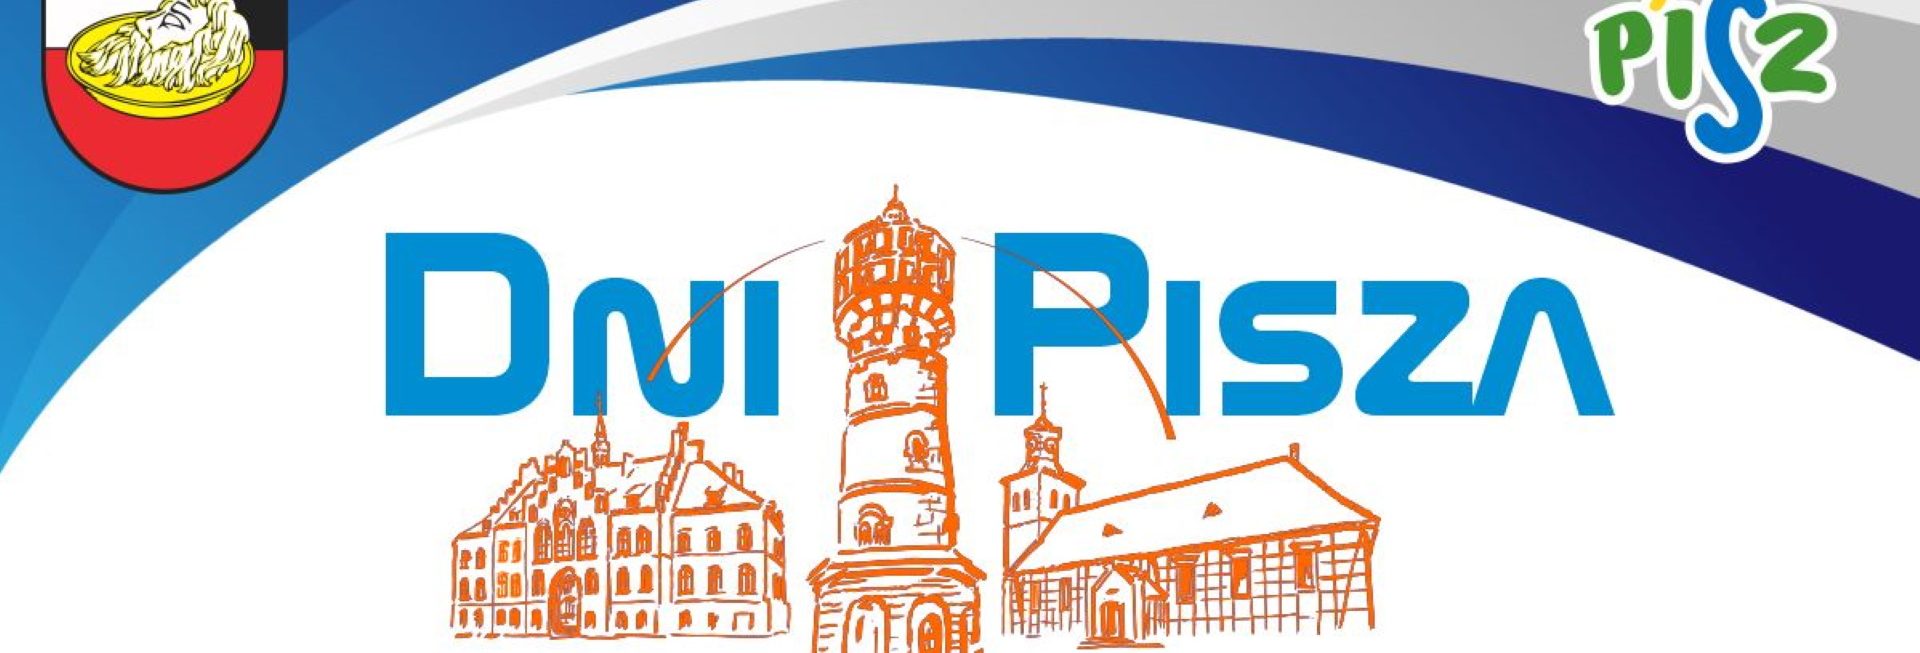 Plakat zapraszający w dniach 7-8 lipca 2023 r. do Pisza na coroczne święto miasta Dni Pisza 2023.